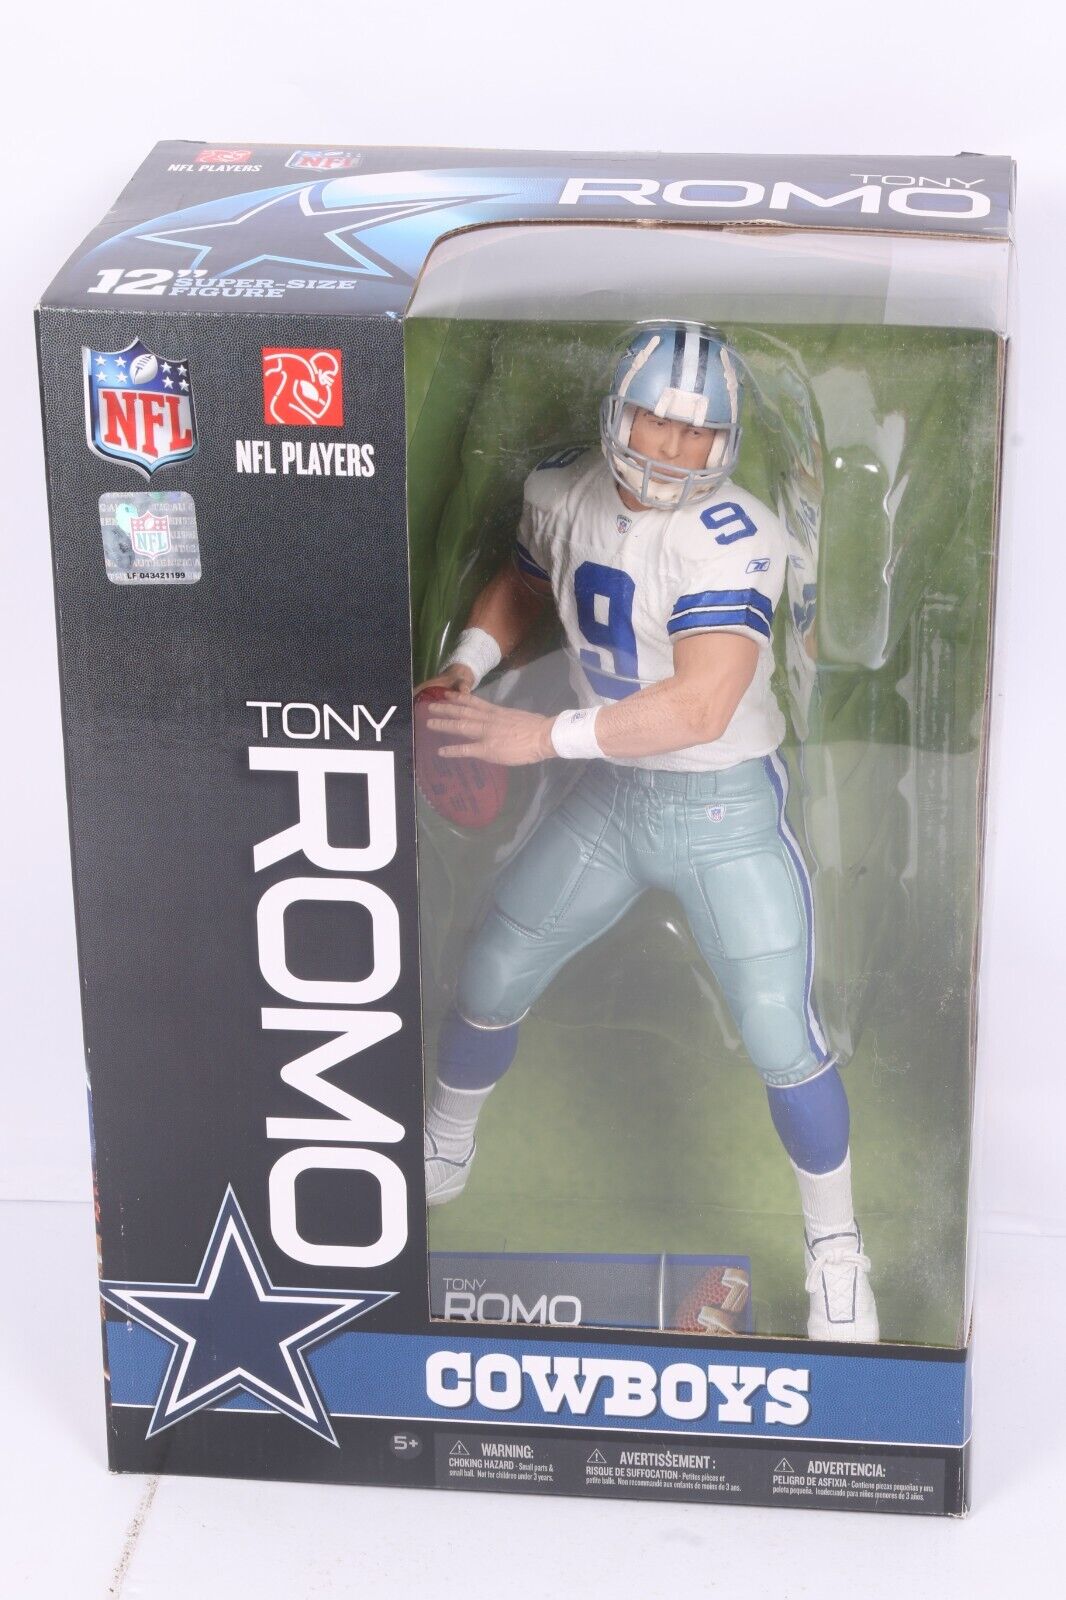 NFL Football 12 inch TONY ROMO action figure